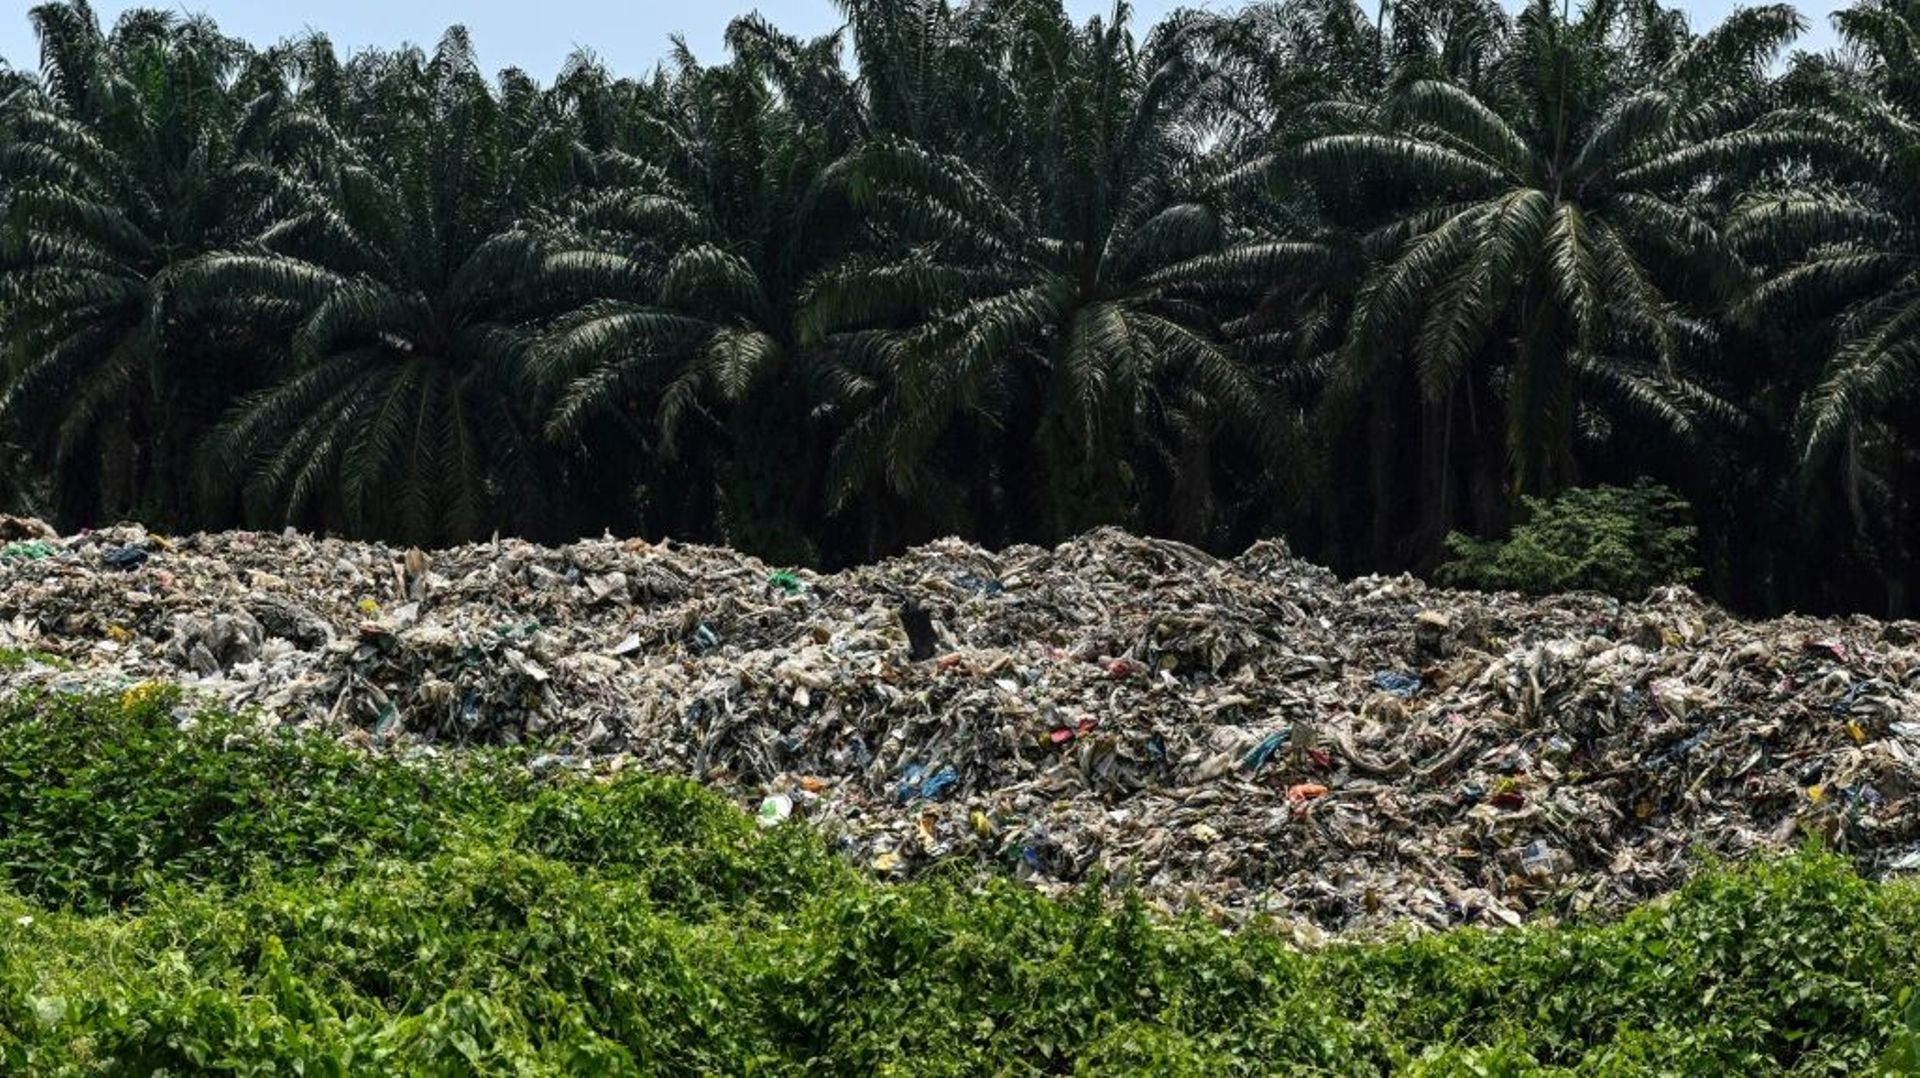 Des déchets plastiques devant des palmiers, dans une usine de recyclage désaffectée à Jenjarom, près de Kuala Lumpur en Malaisie, le 8 mars 2019